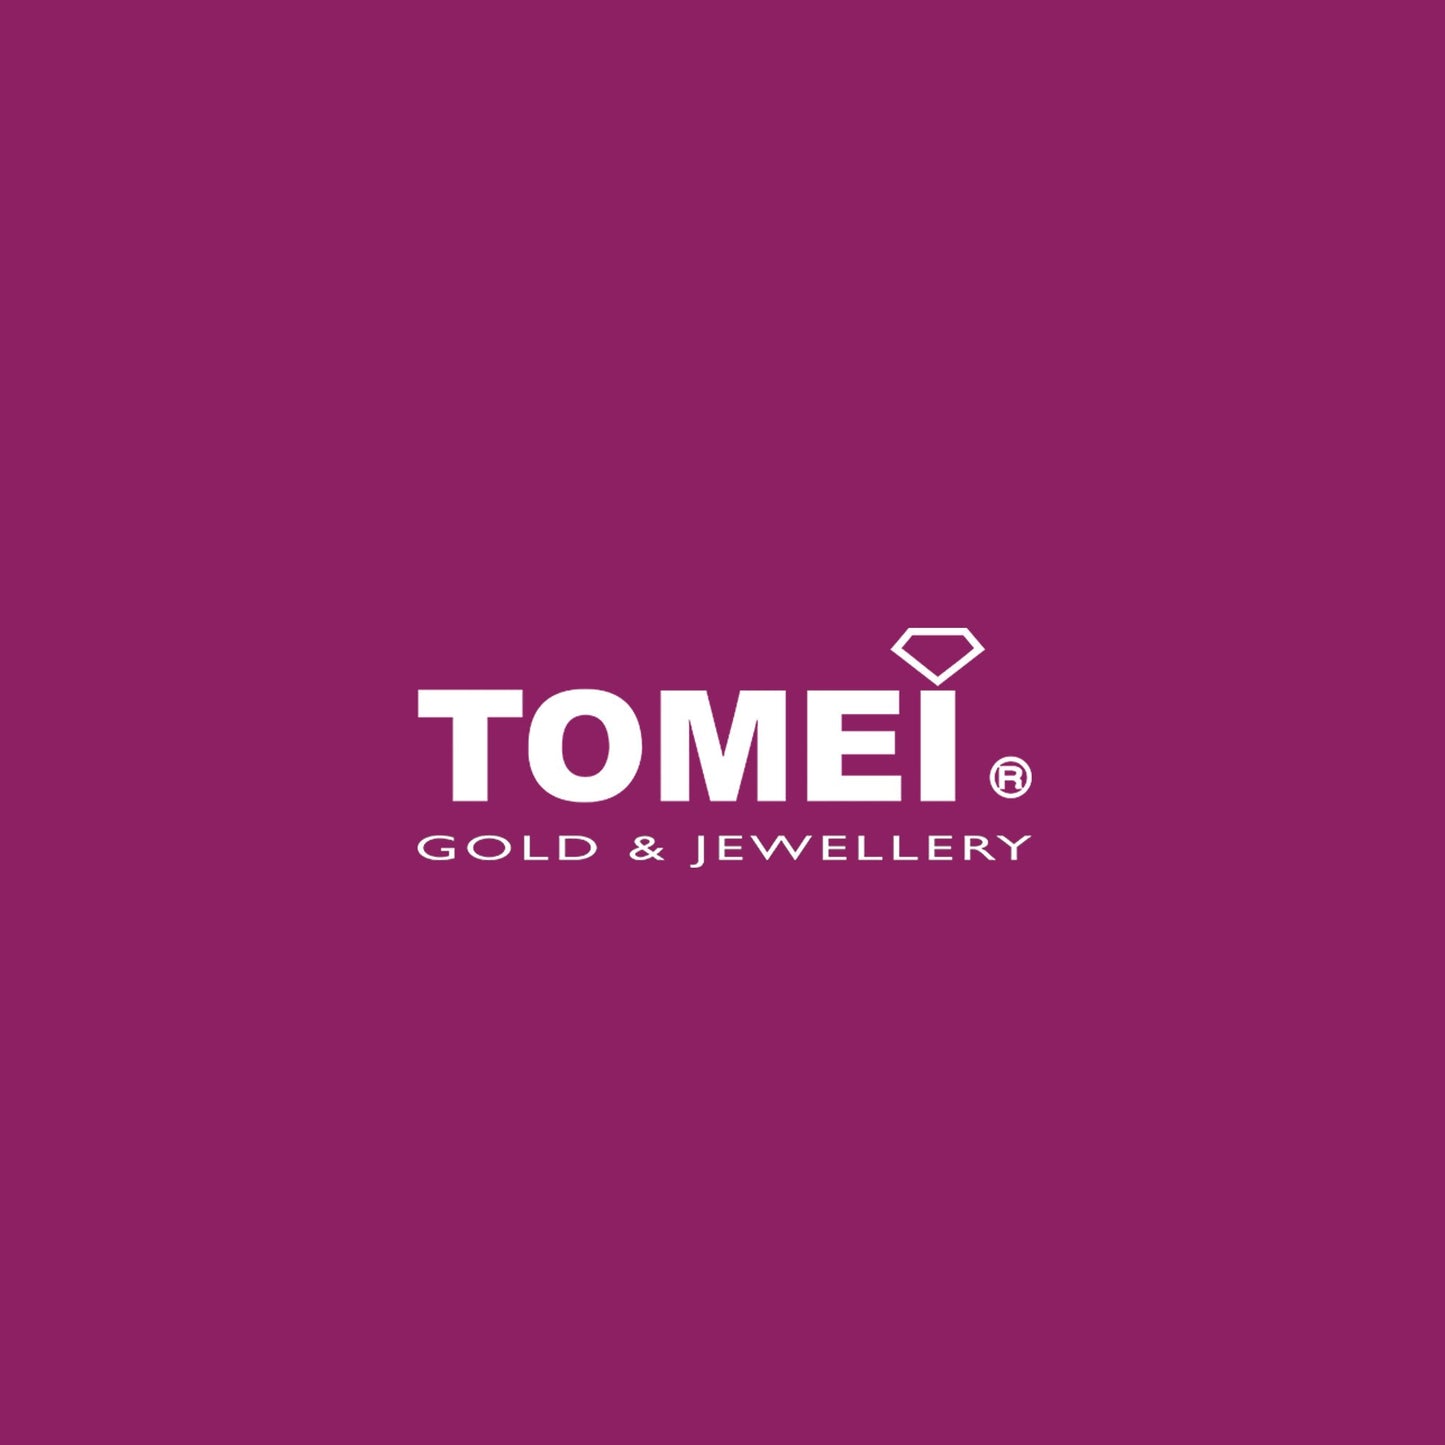 TOMEI Poire Earrings White Gold 750